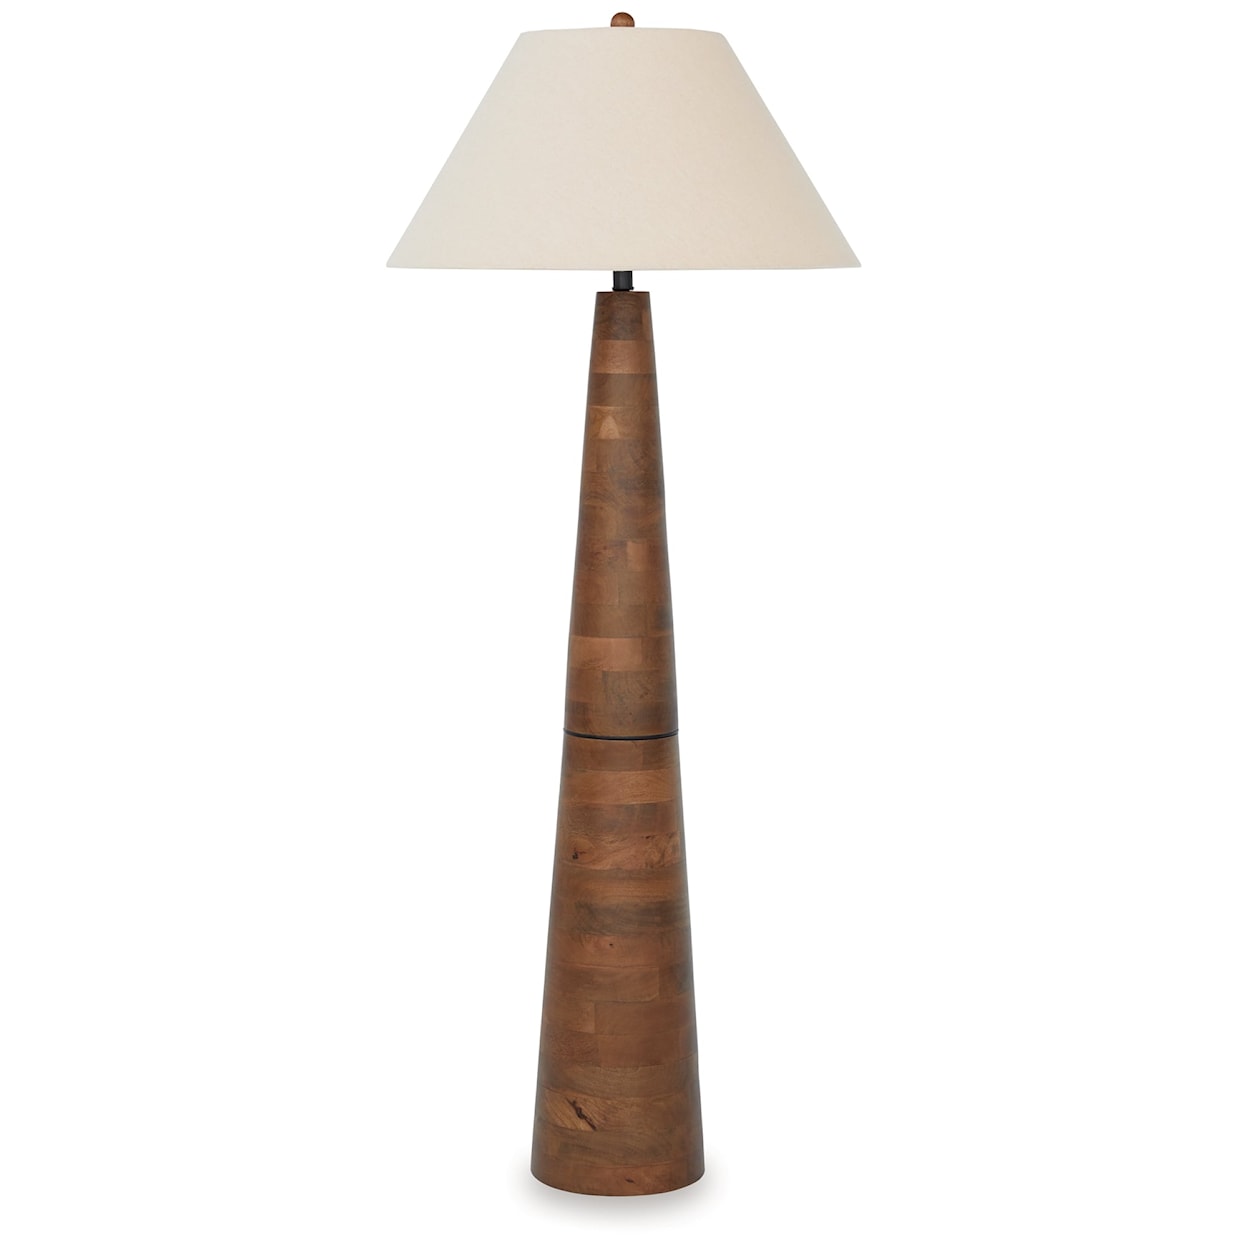 Benchcraft Danset Wood Floor Lamp